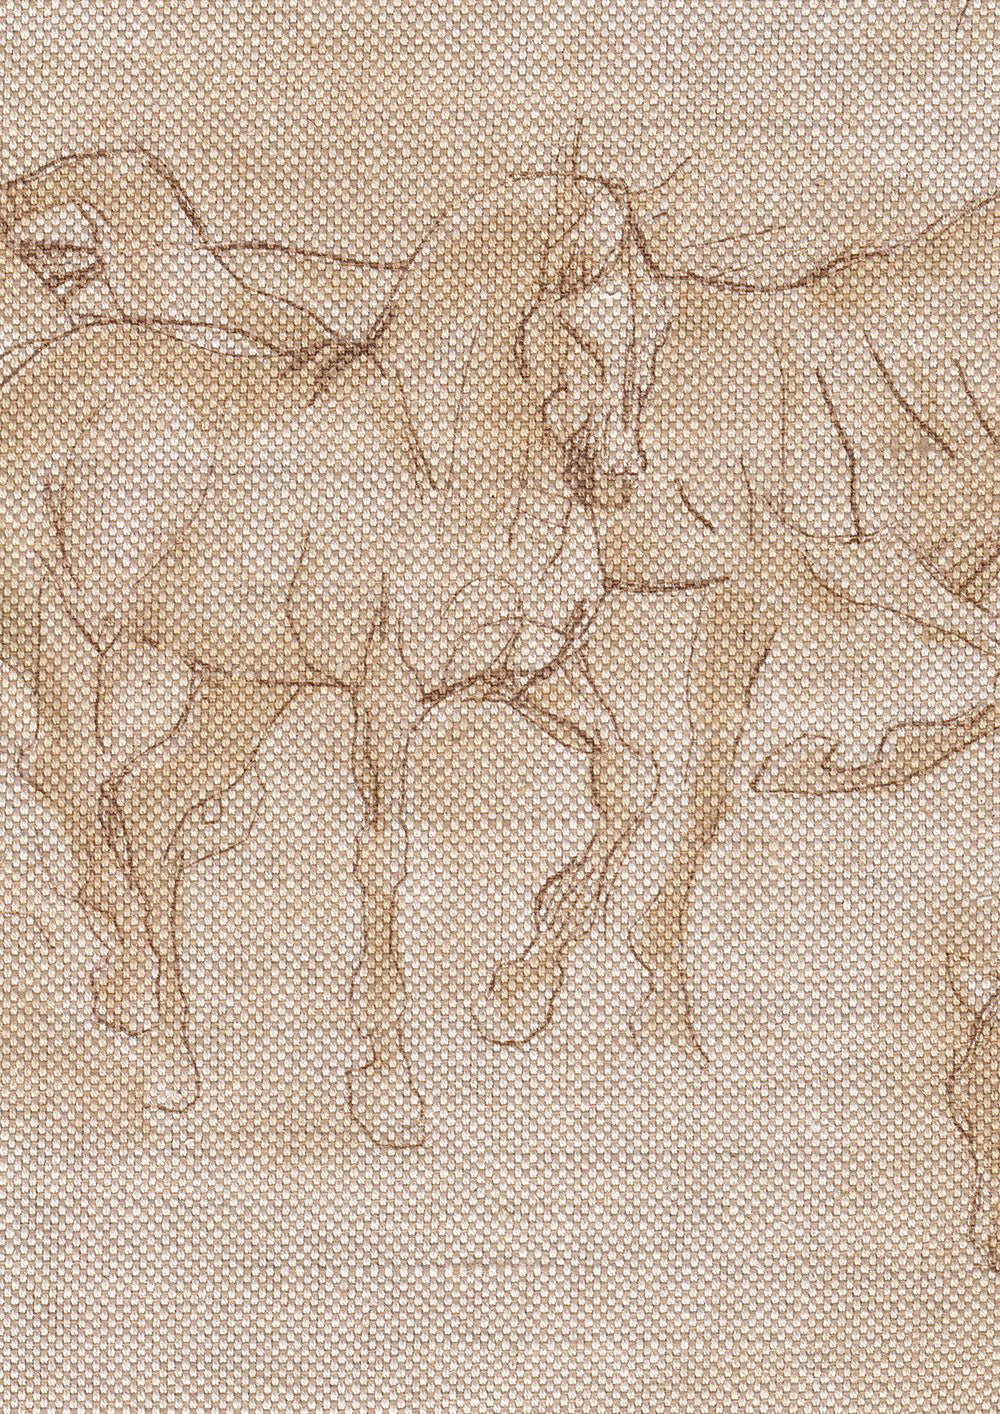 Equus Room Fabric - Sand